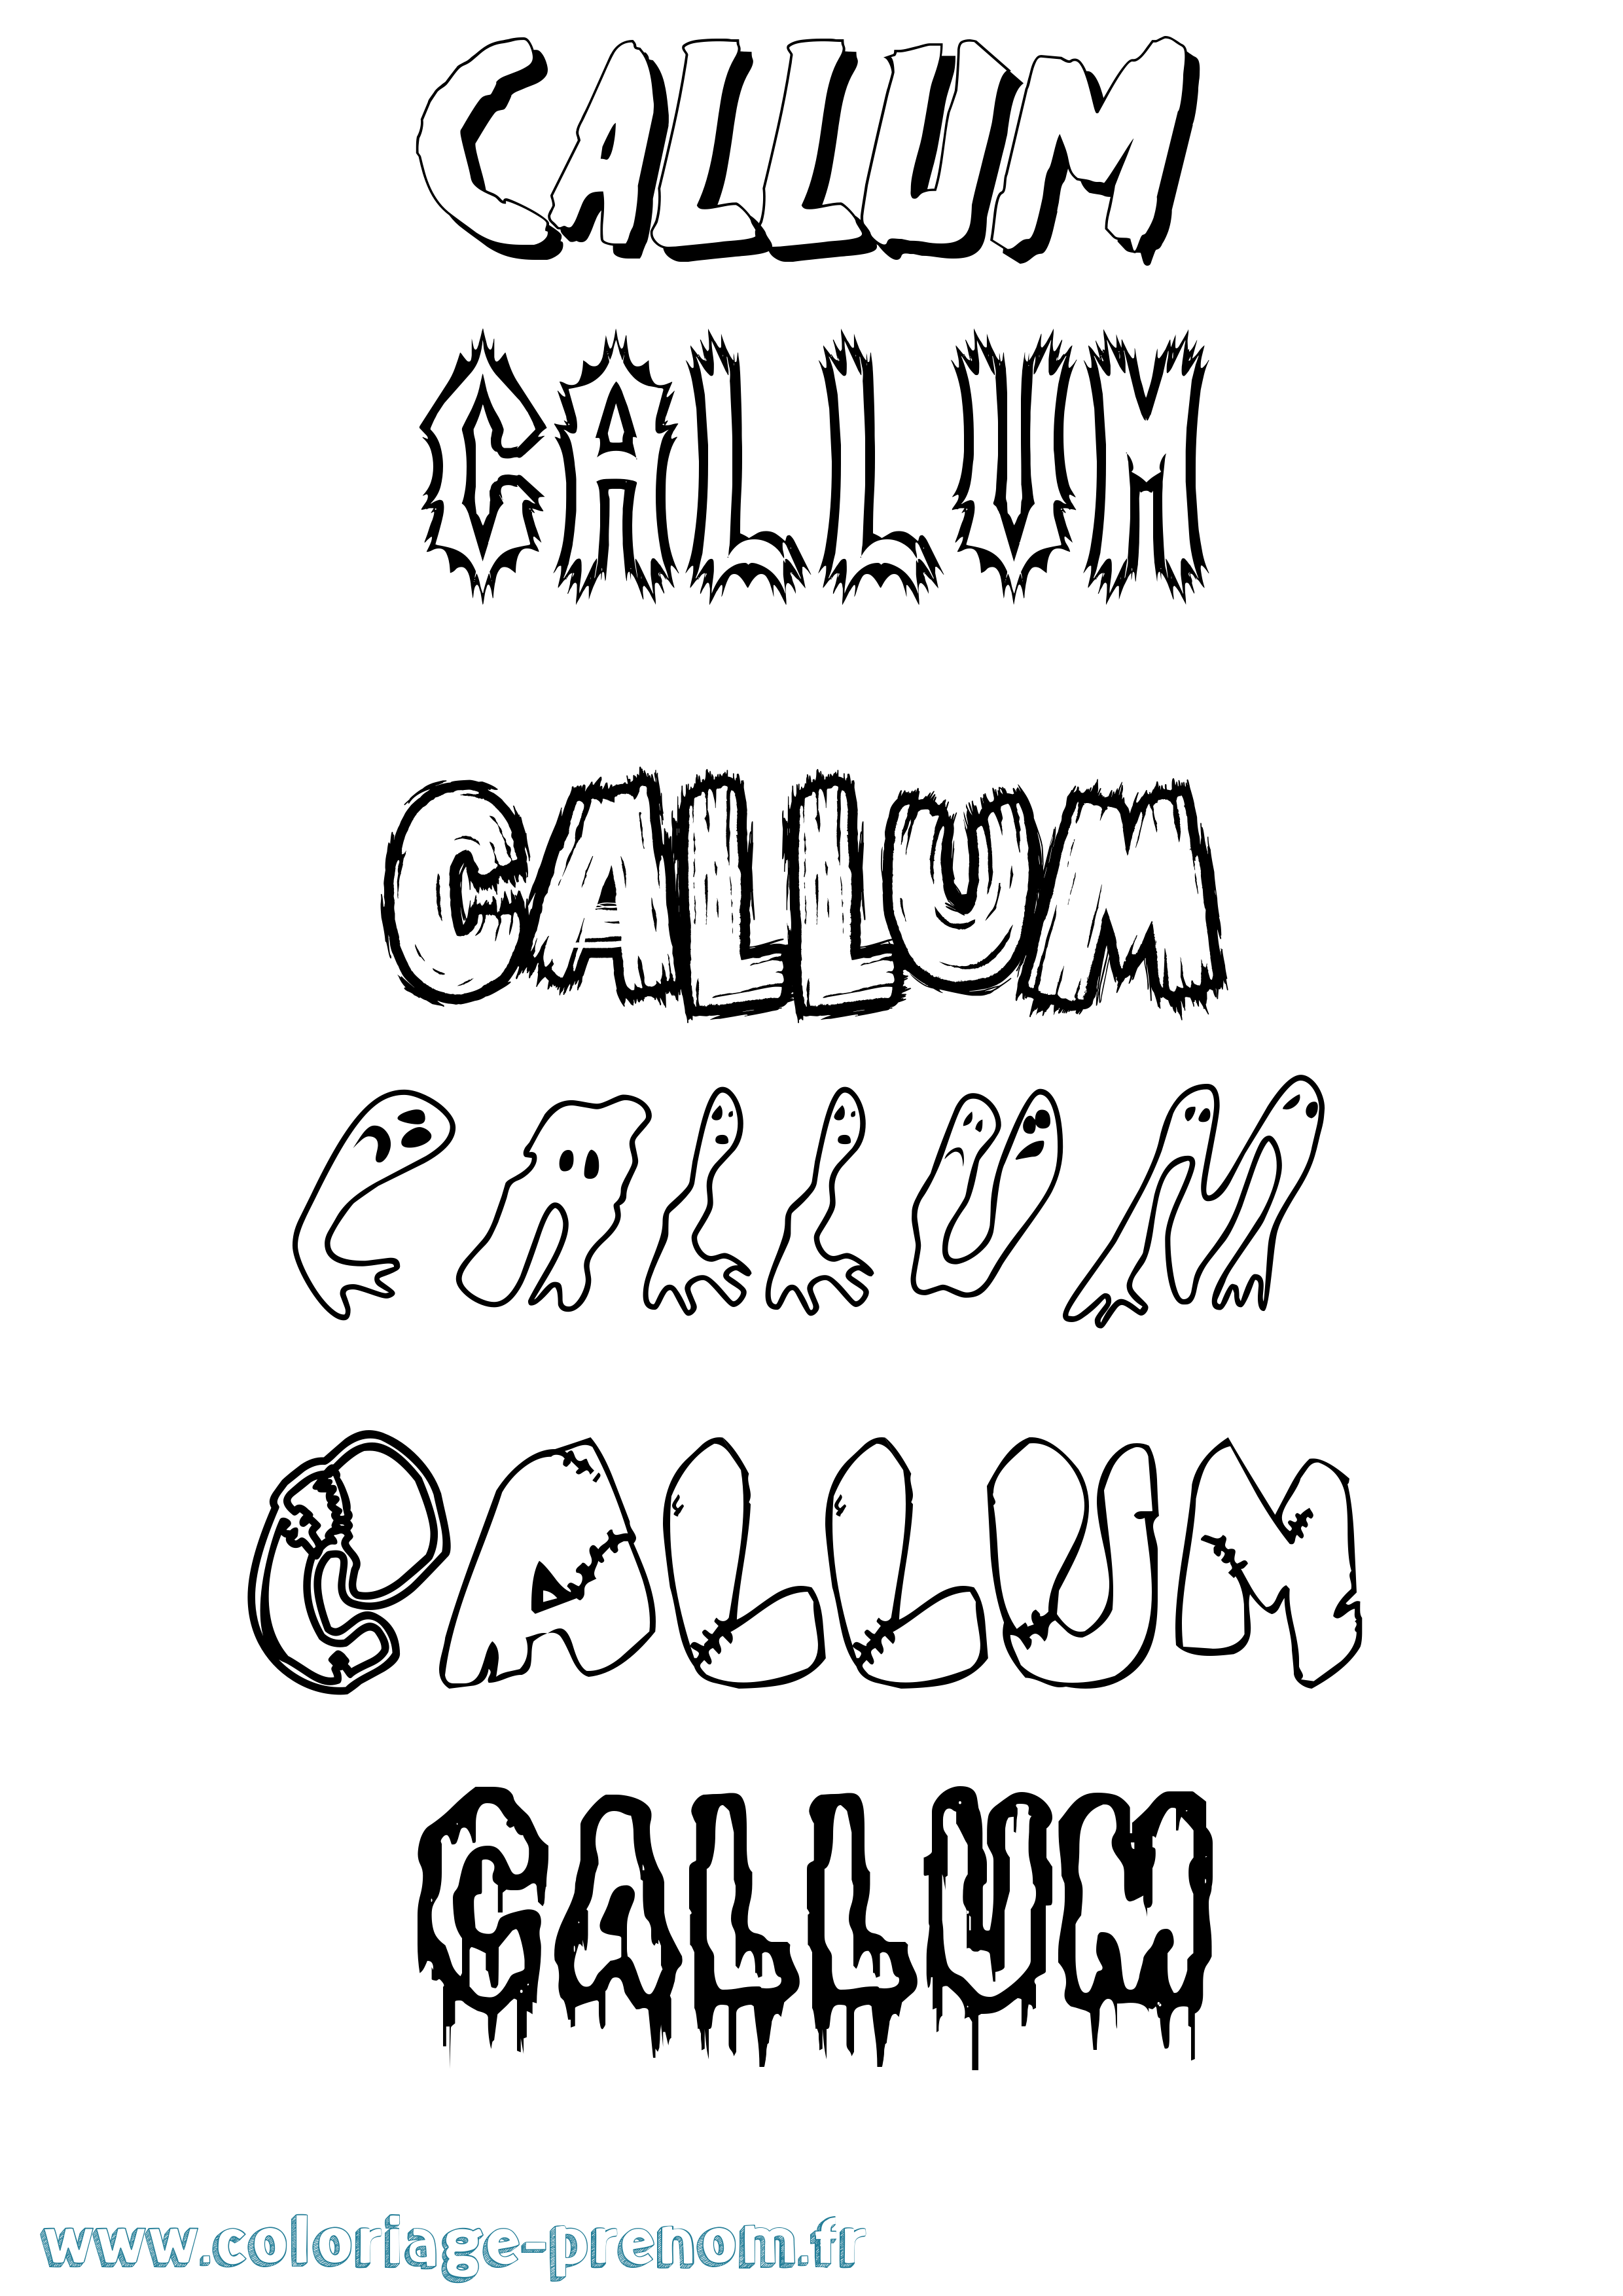 Coloriage prénom Callum Frisson